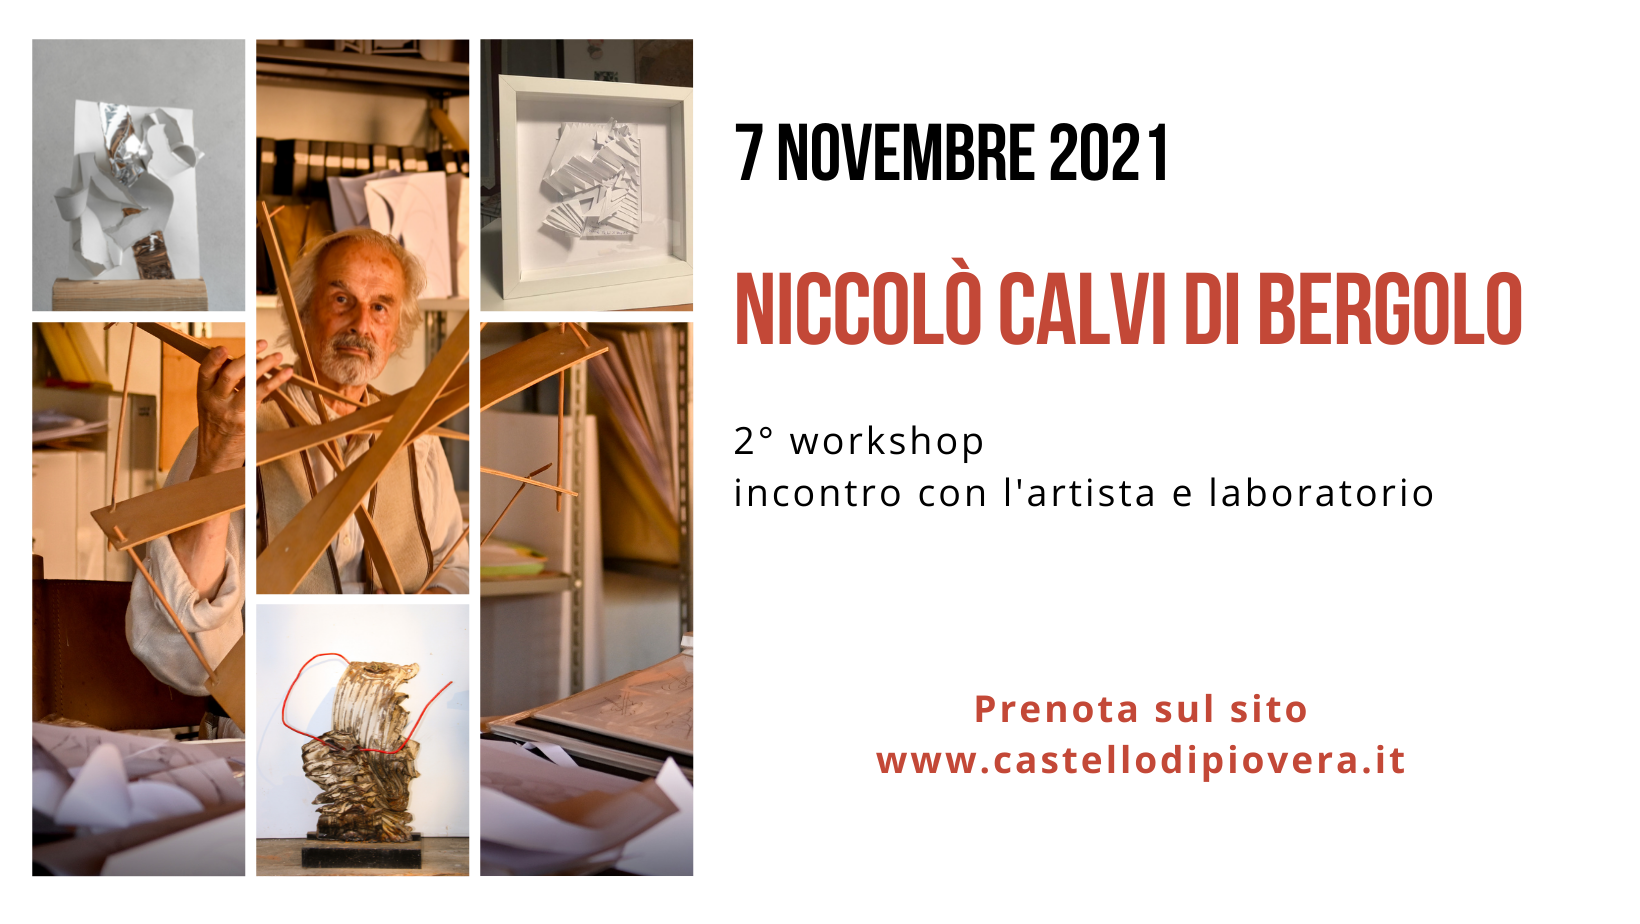 2° Workshop con Niccolò Calvi di Bergolo